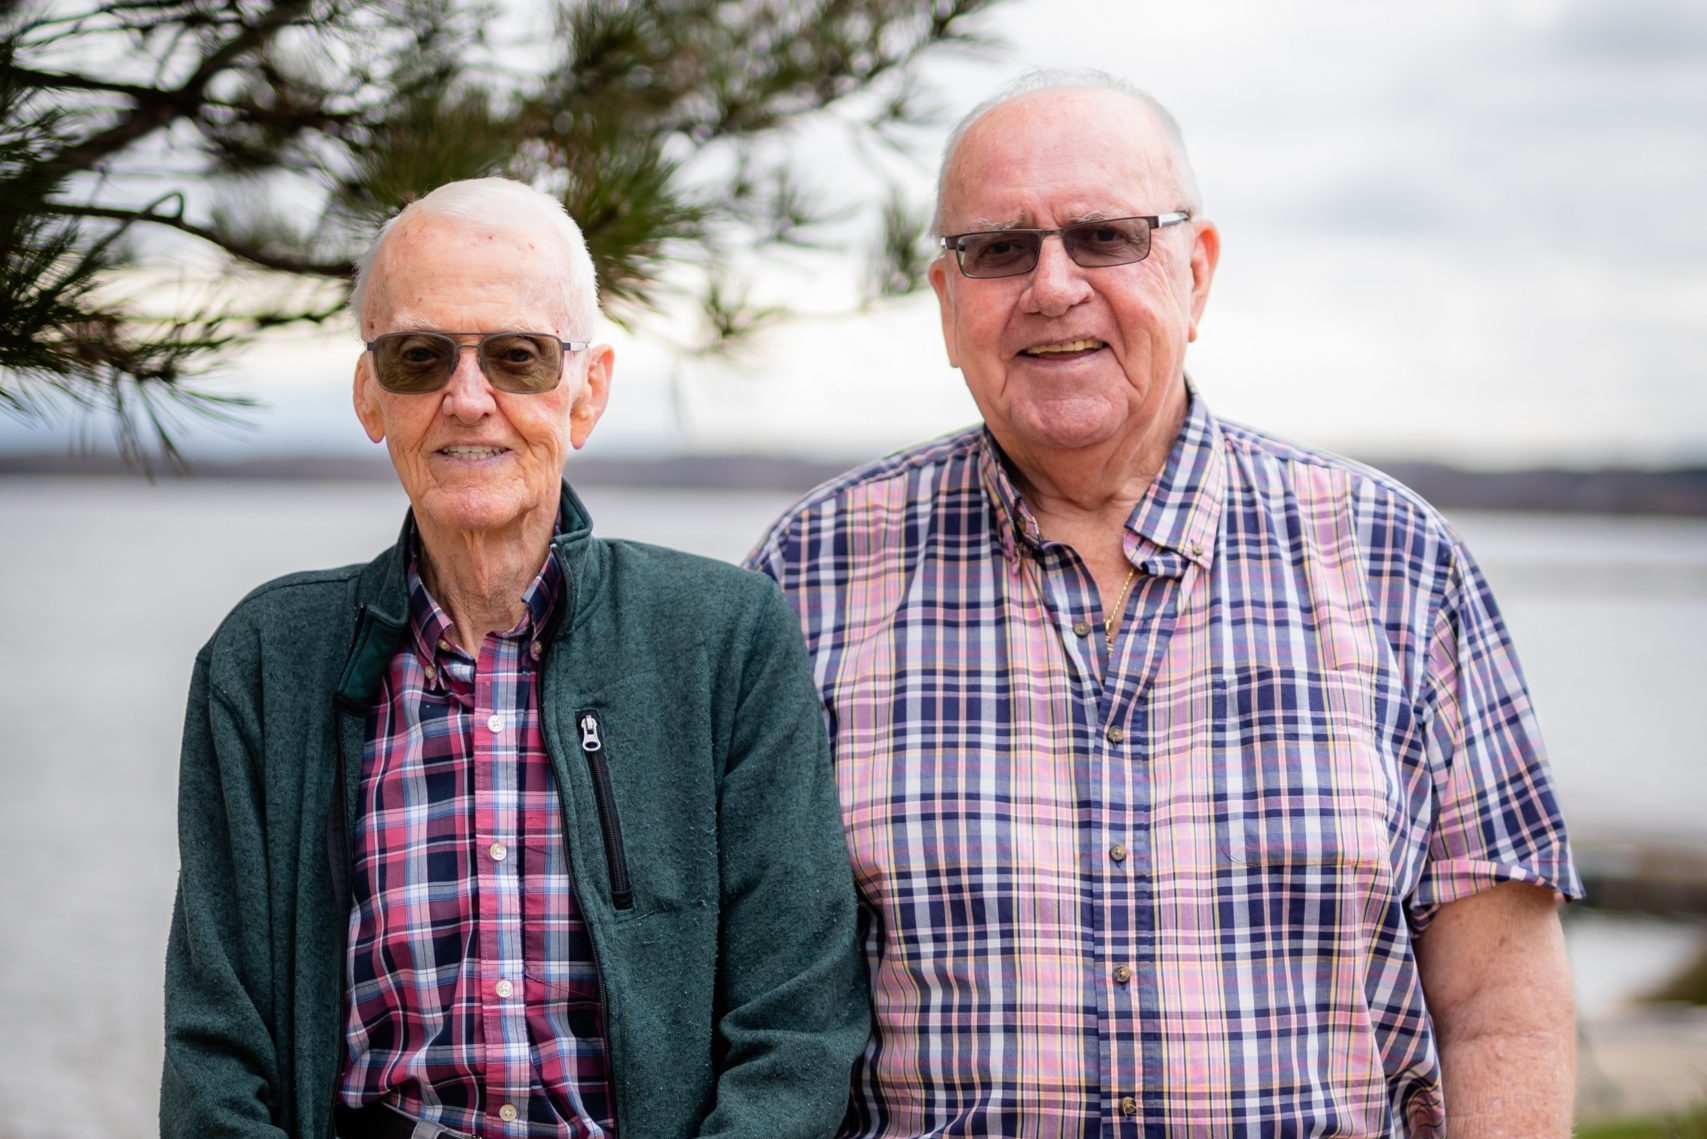 Two older men wearing plaid shirts